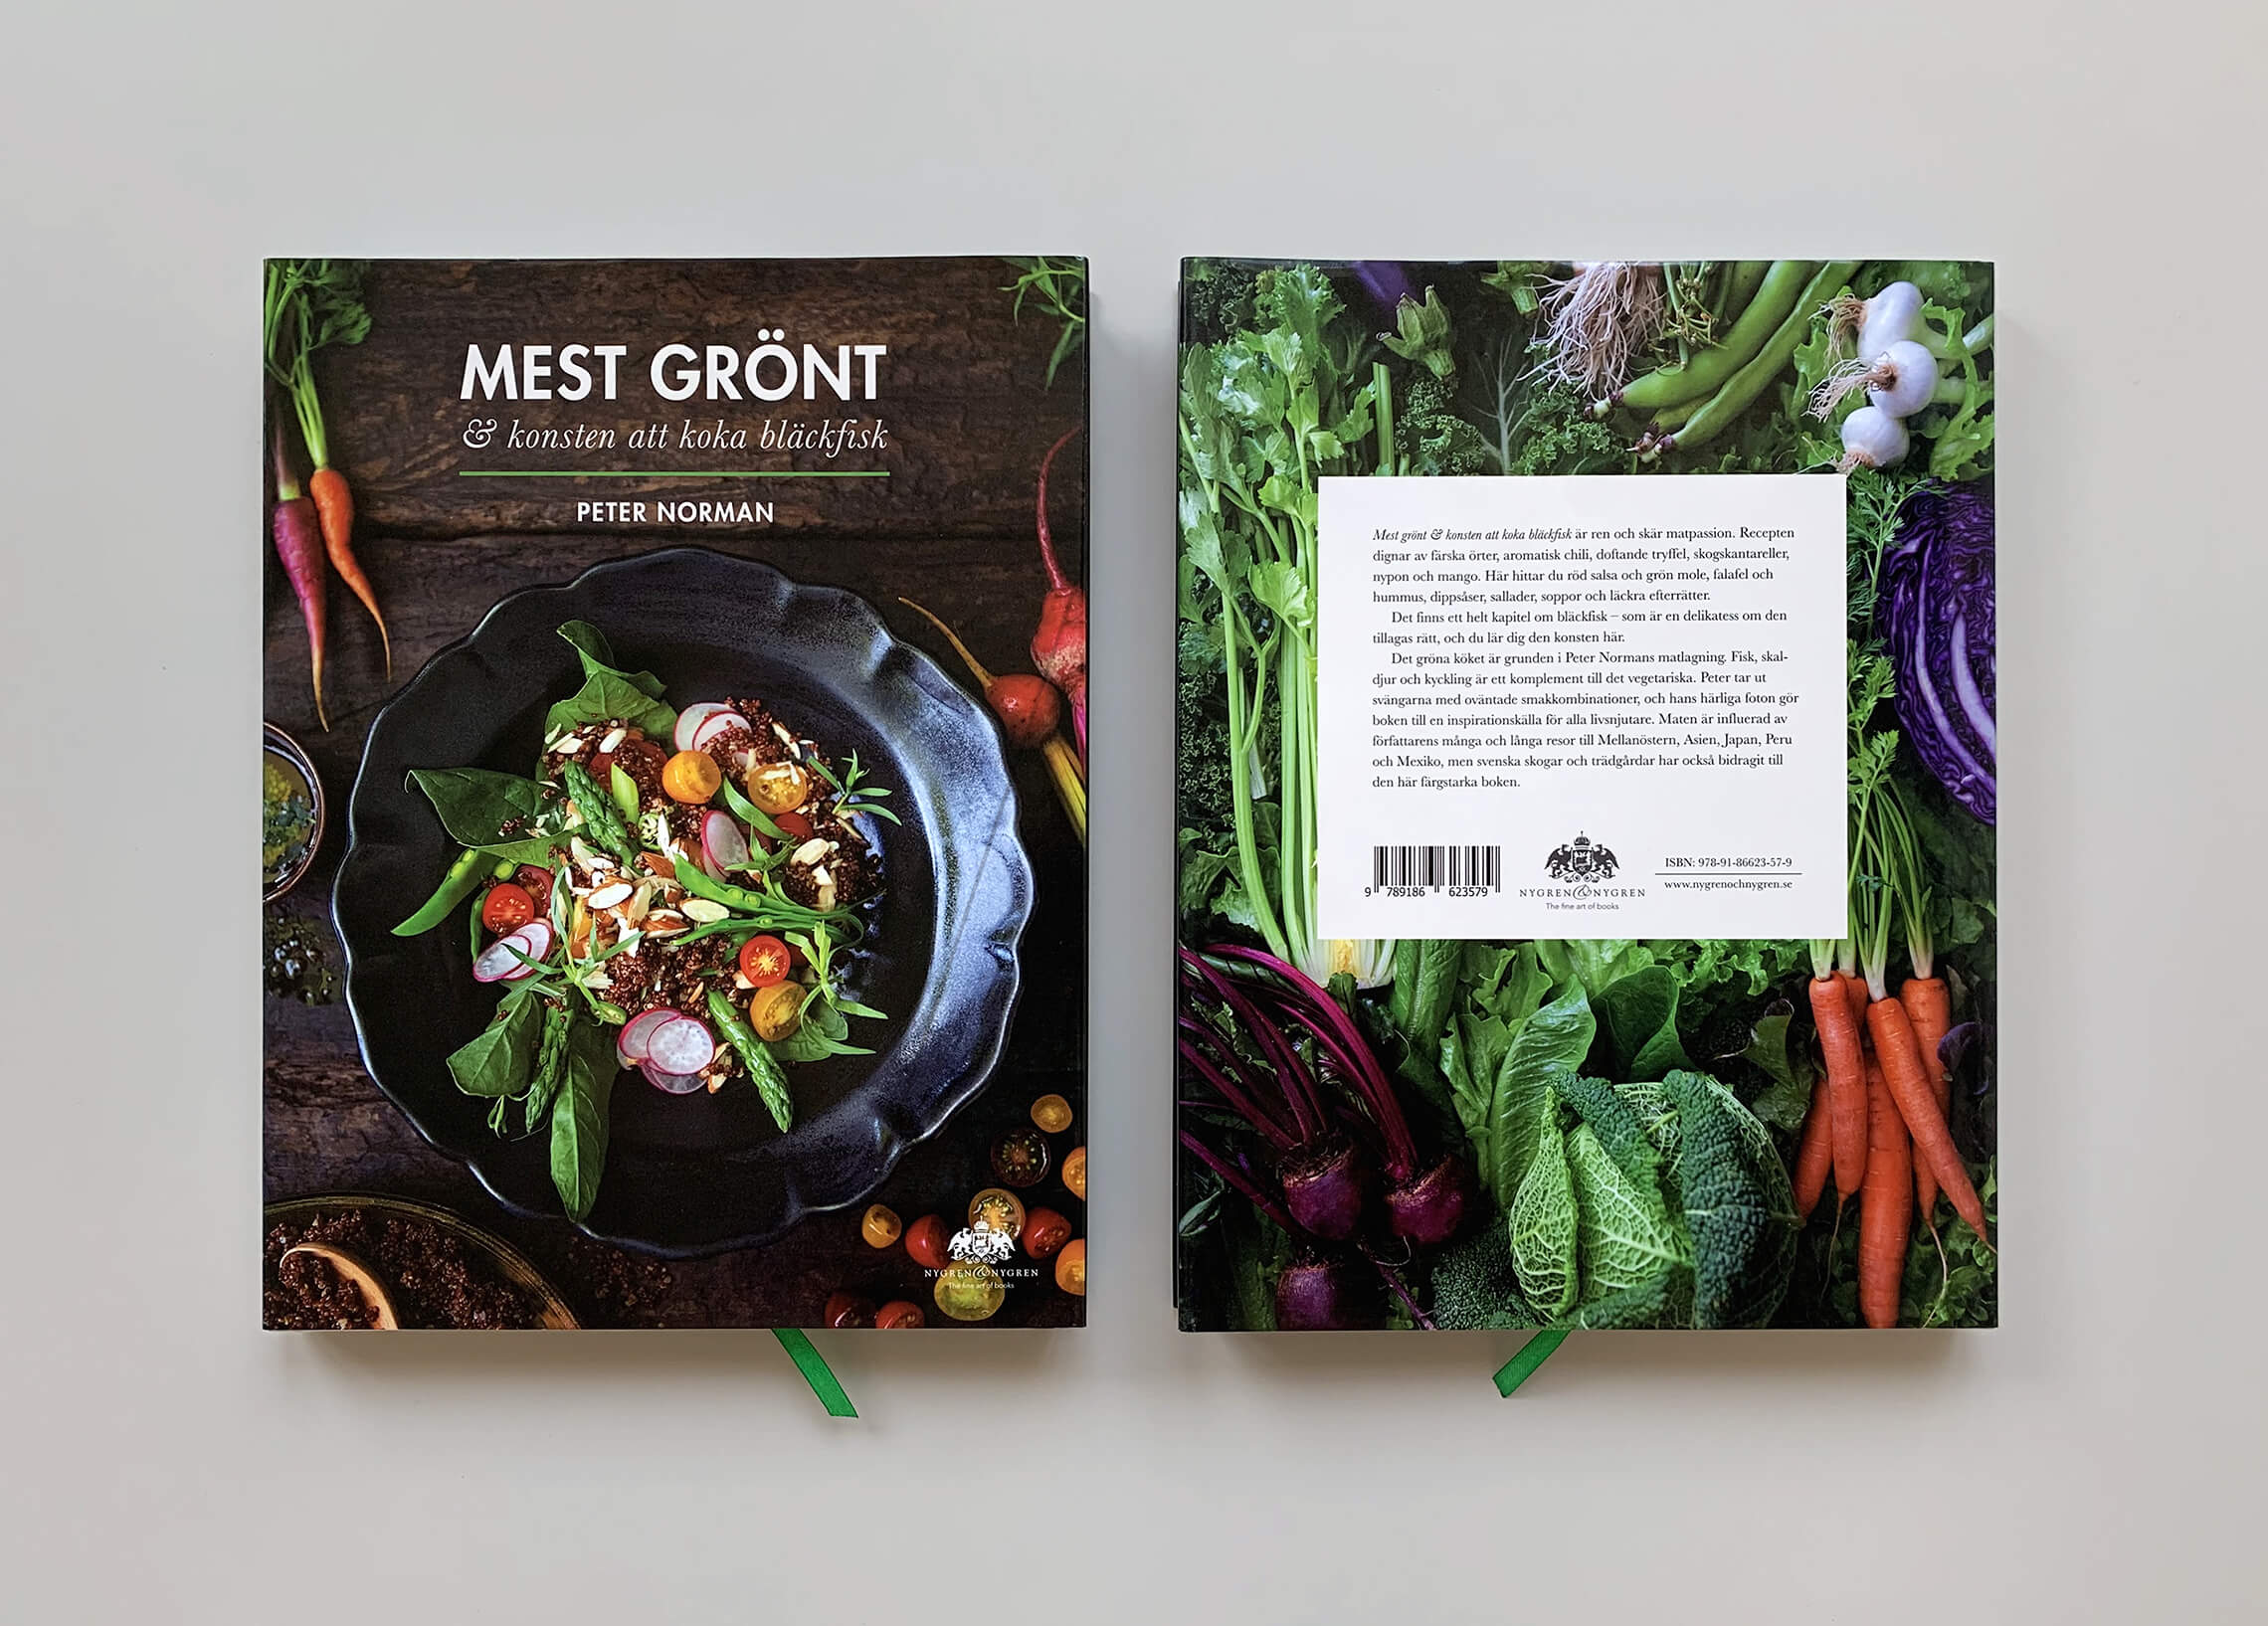 Bokomslag (framsida och baksida) av "Mest grönt och konsten att koka bläckfisk"